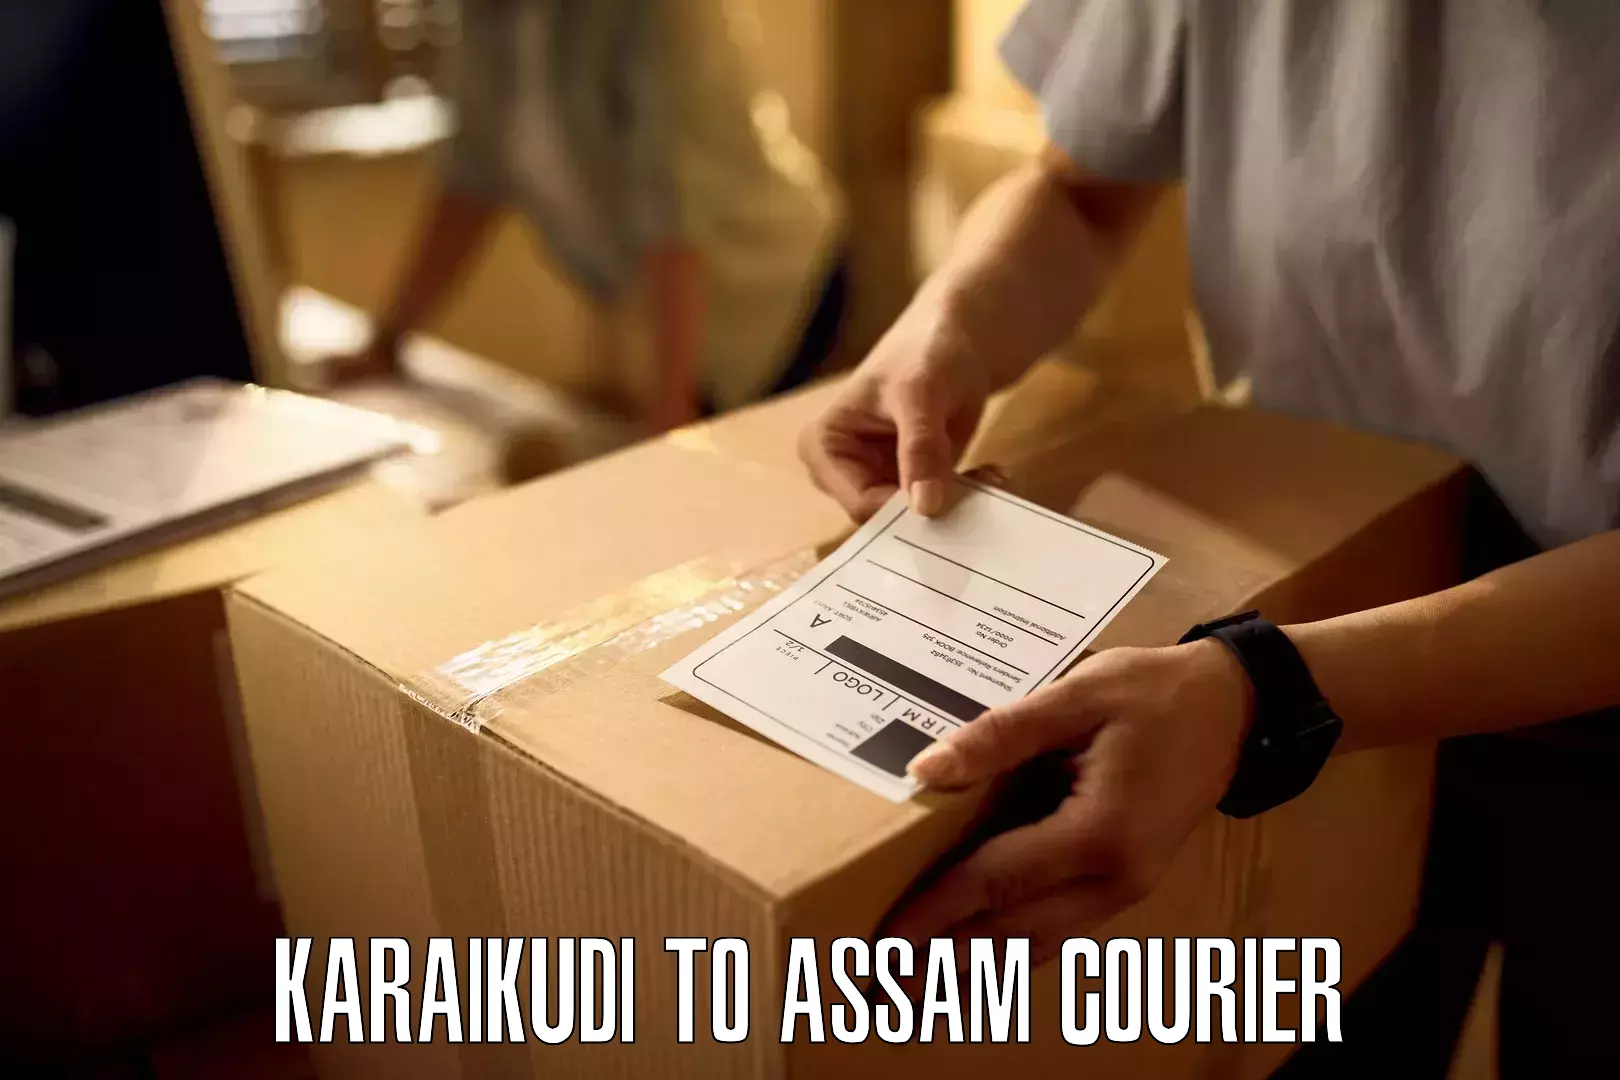 Reliable courier services Karaikudi to Manikpur Bongaigaon